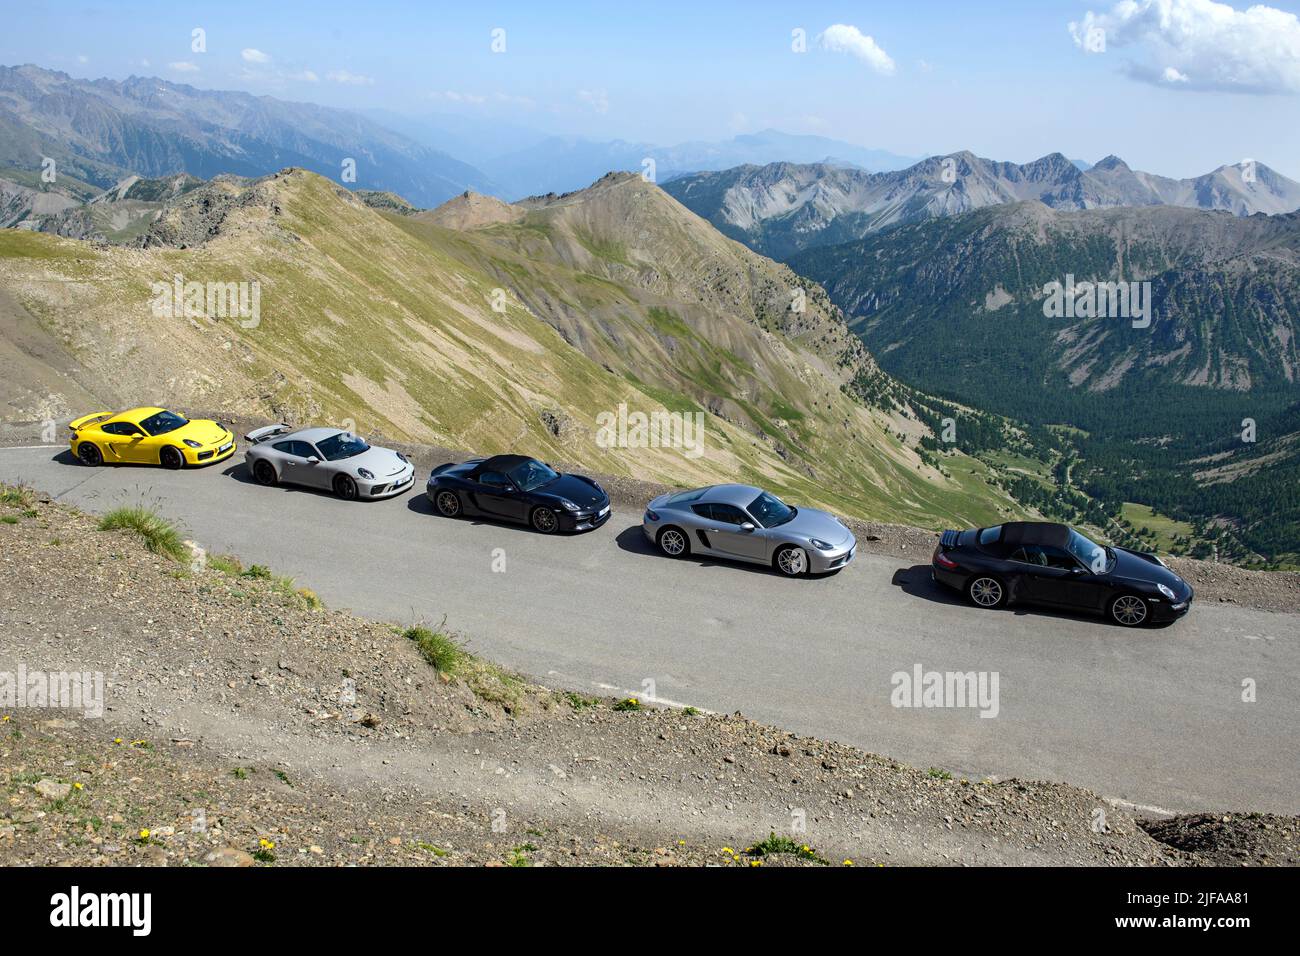 Vista de cinco coches deportivos Porsche en 2802 metros de altura más alto asfaltado carretera en los Alpes, Cime de la Bonette, Mercantour Parque Nacional, Jausiers Foto de stock